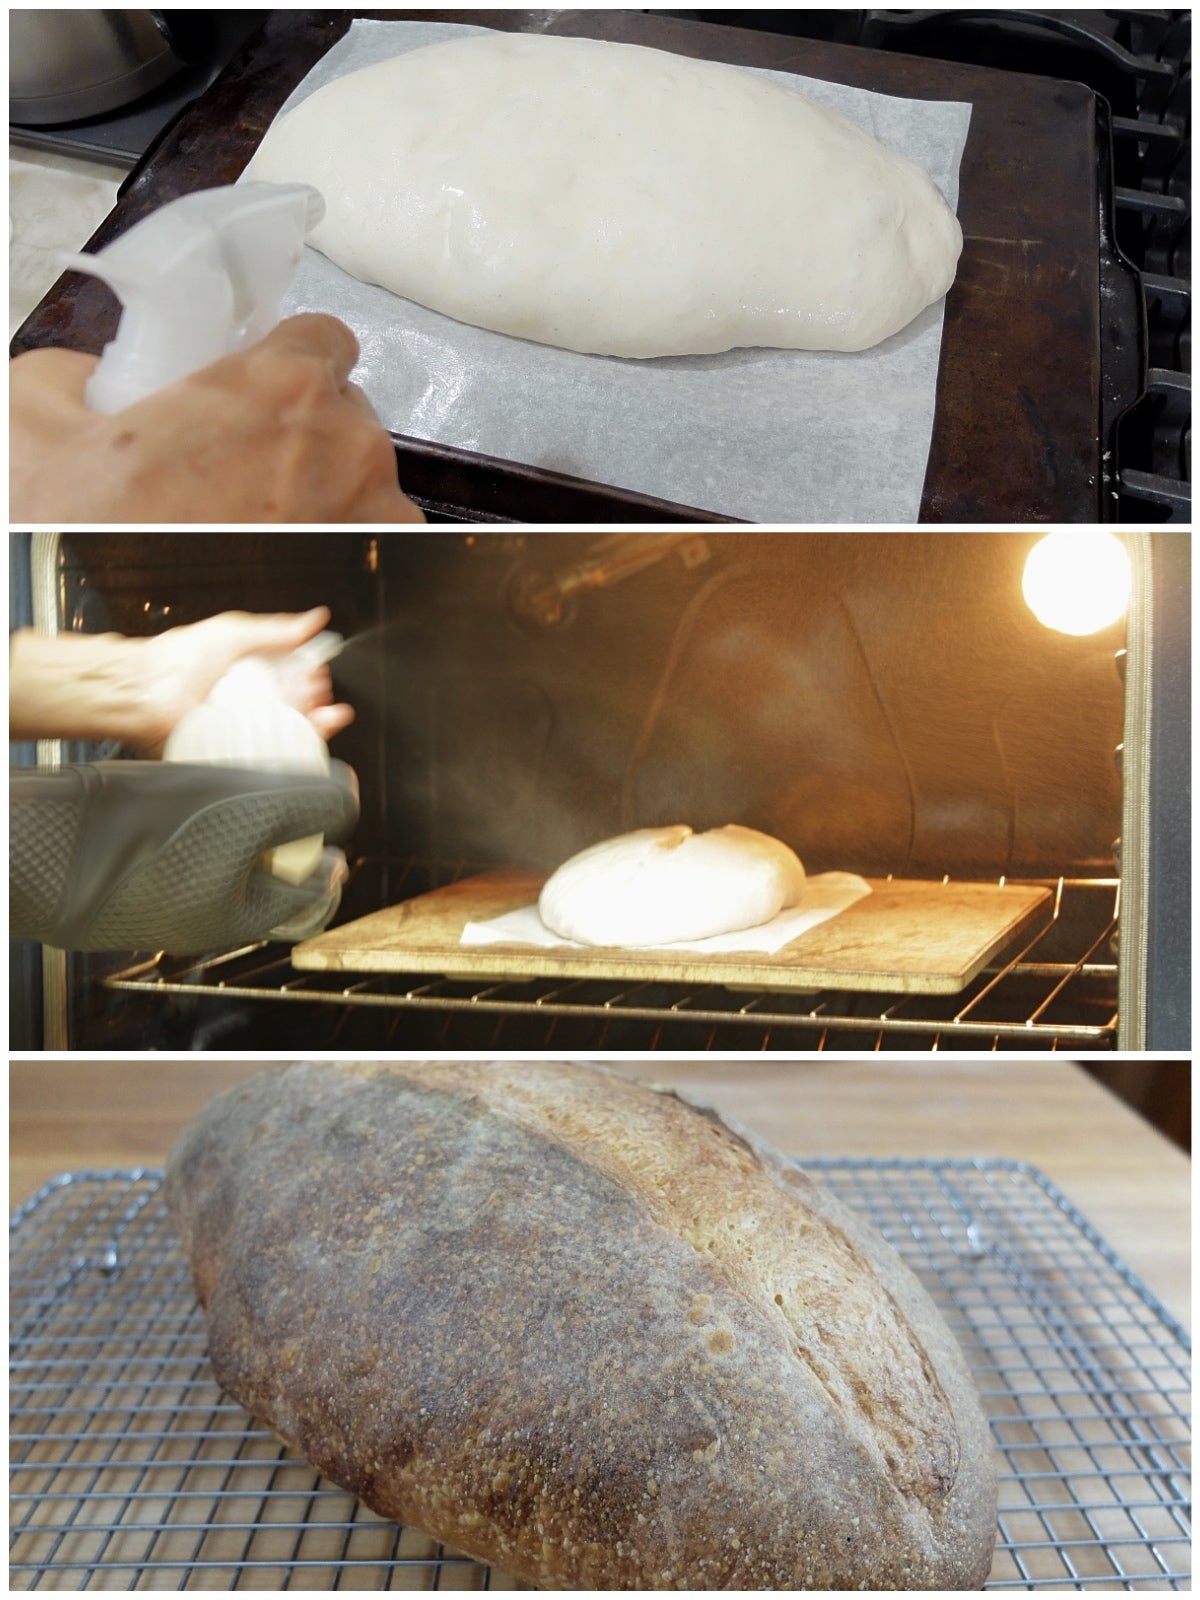 https://www.kingarthurbaking.com/sites/default/files/blog-images/2016/11/Steam-in-bread-baking-68.jpg